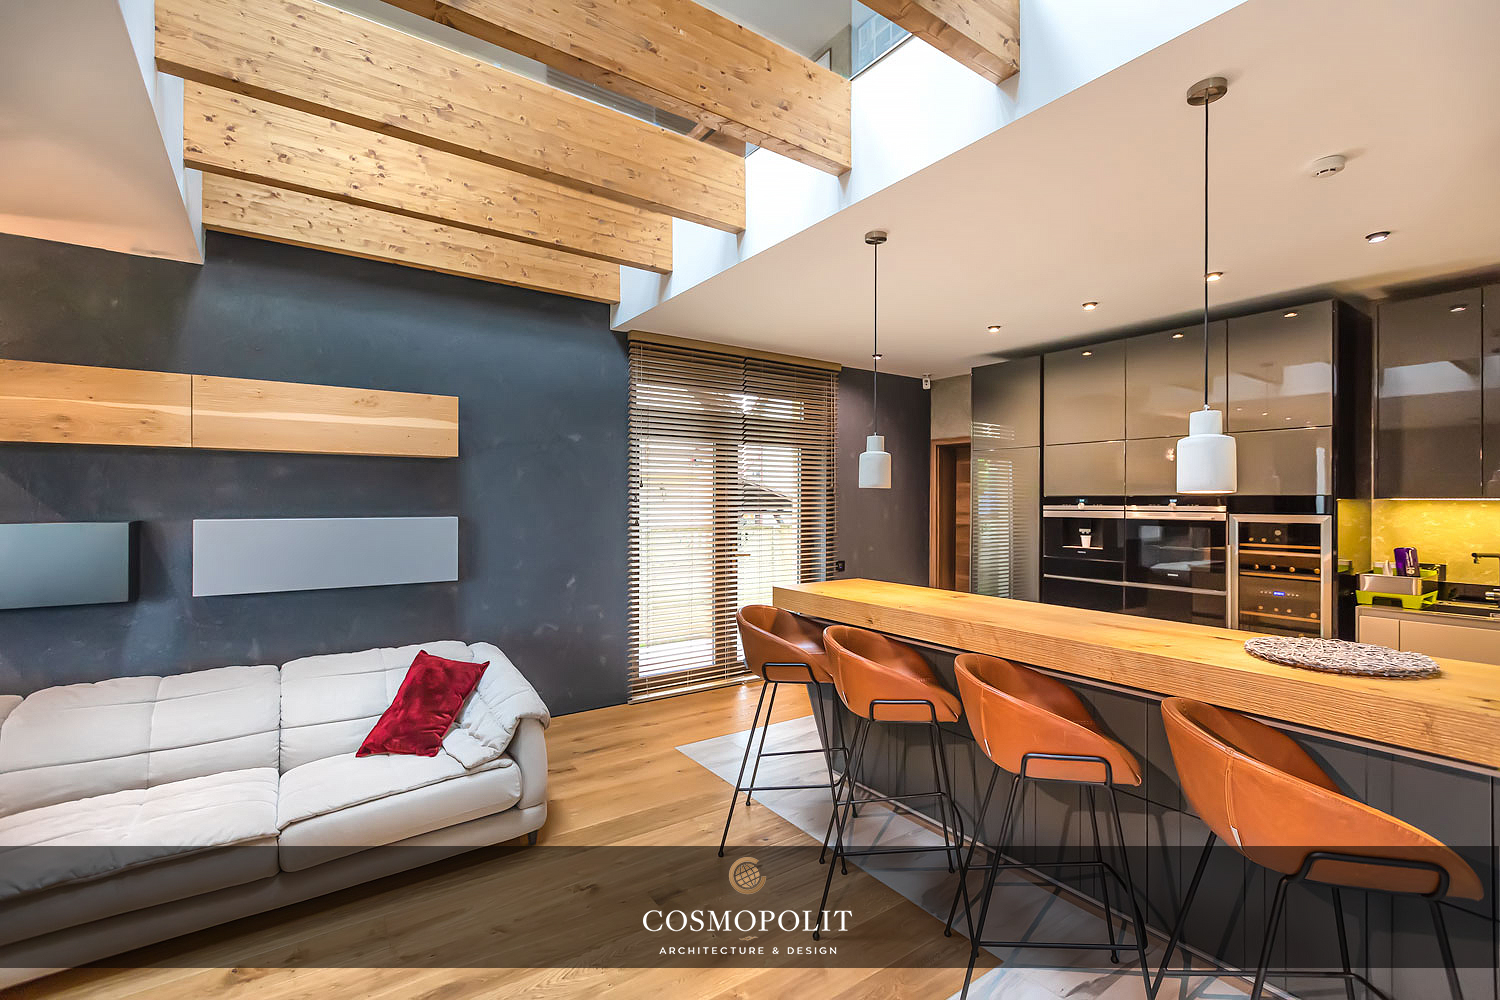 Proiect design interior apartament Cosmopolit